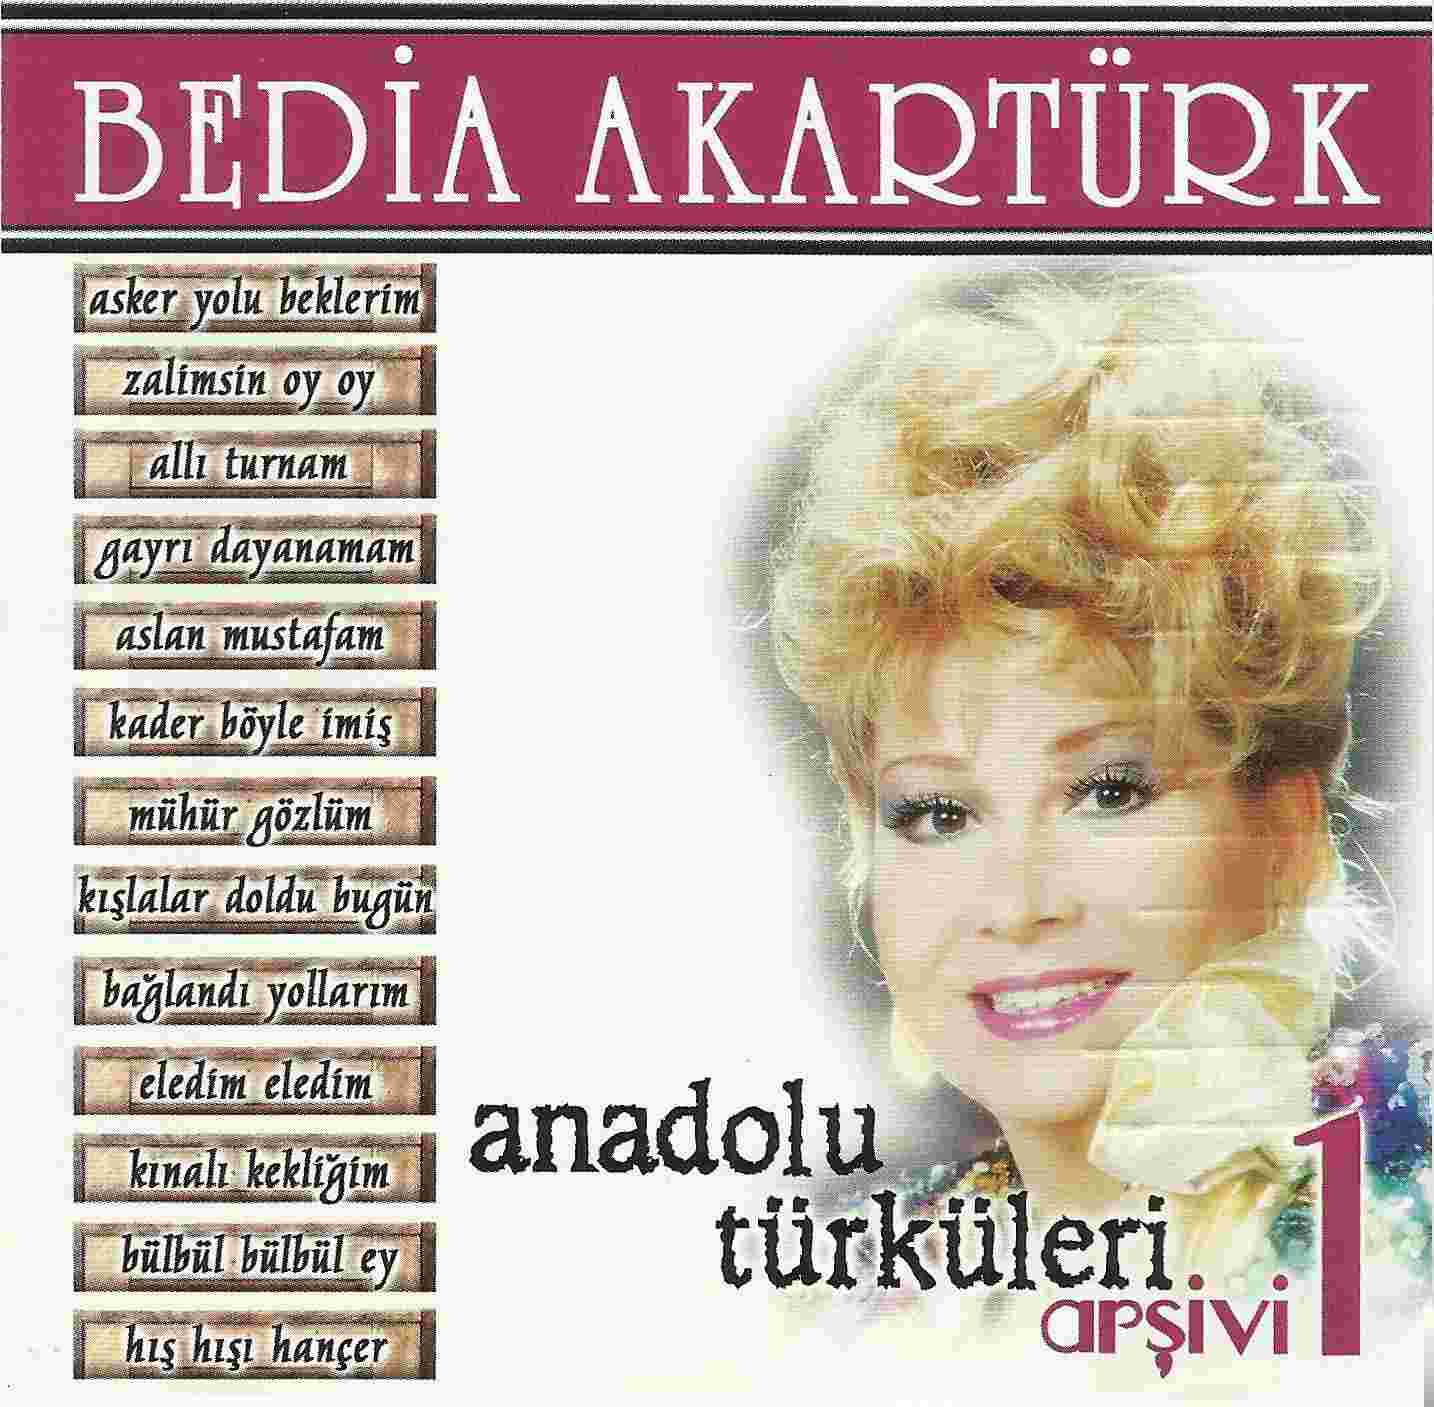 Bedia Akartürk Anadolu Türküleri (1991)